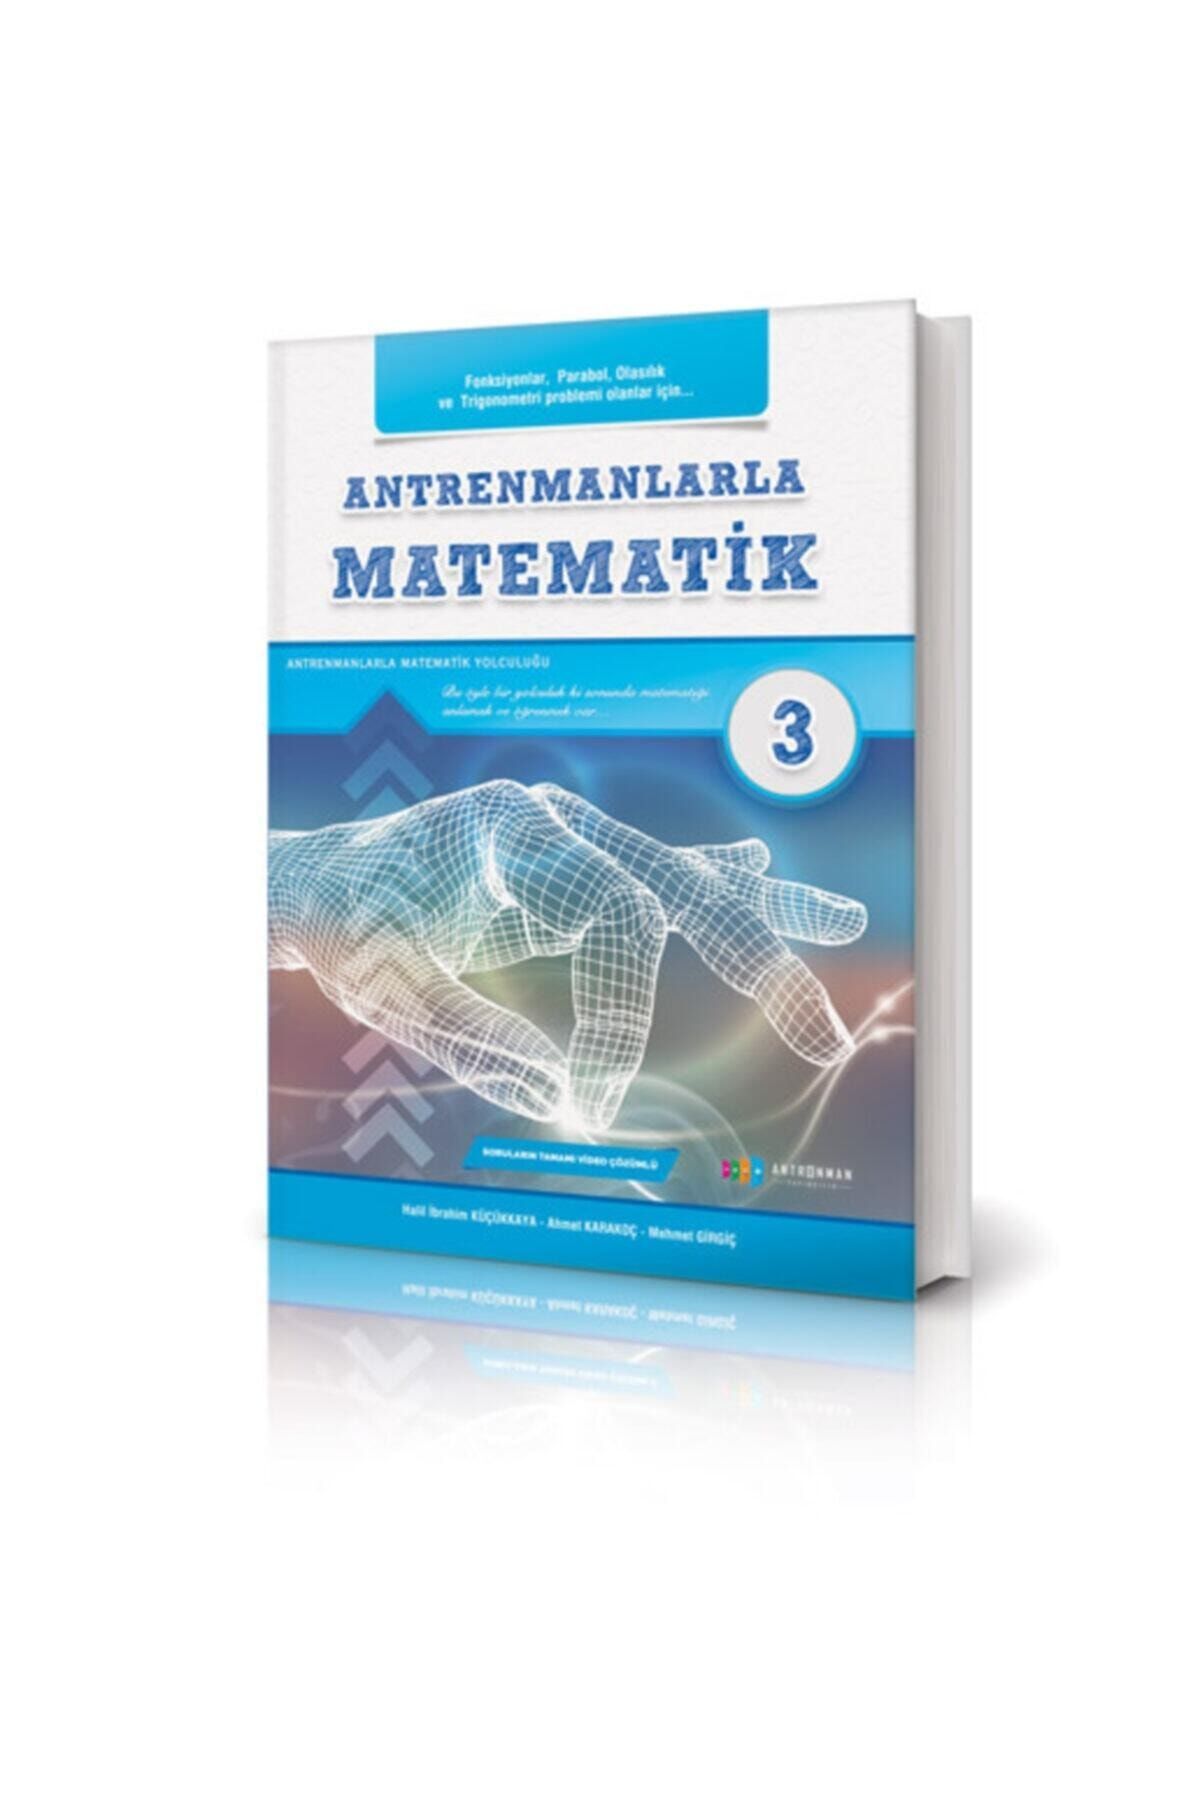 Antrenman Yayınları Tyt-Ayt İçin Antrenmanlarla Matematik 3